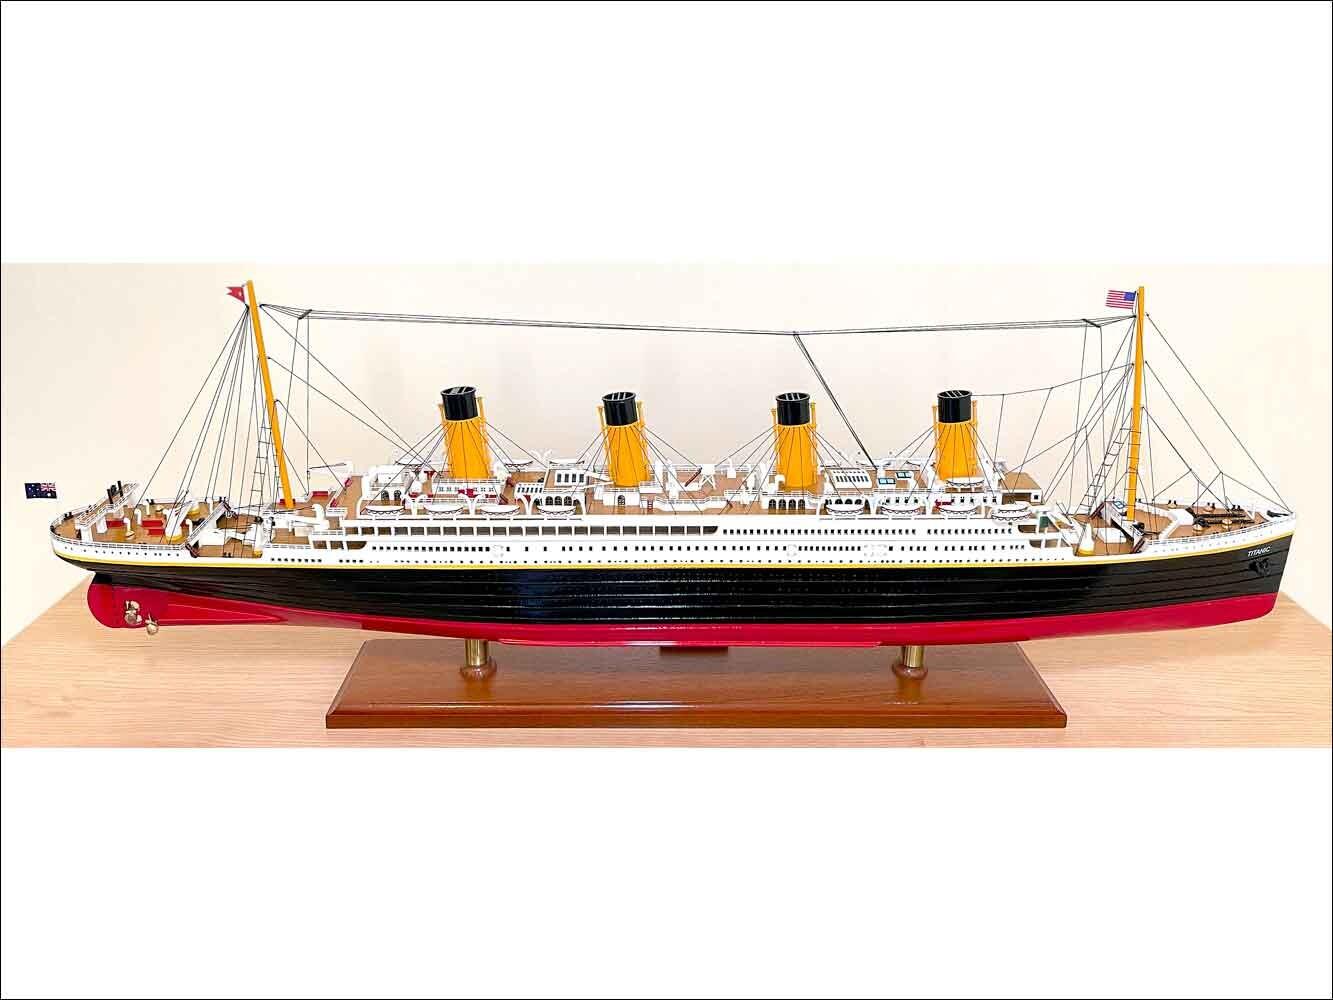 Huge Titanic model fully built